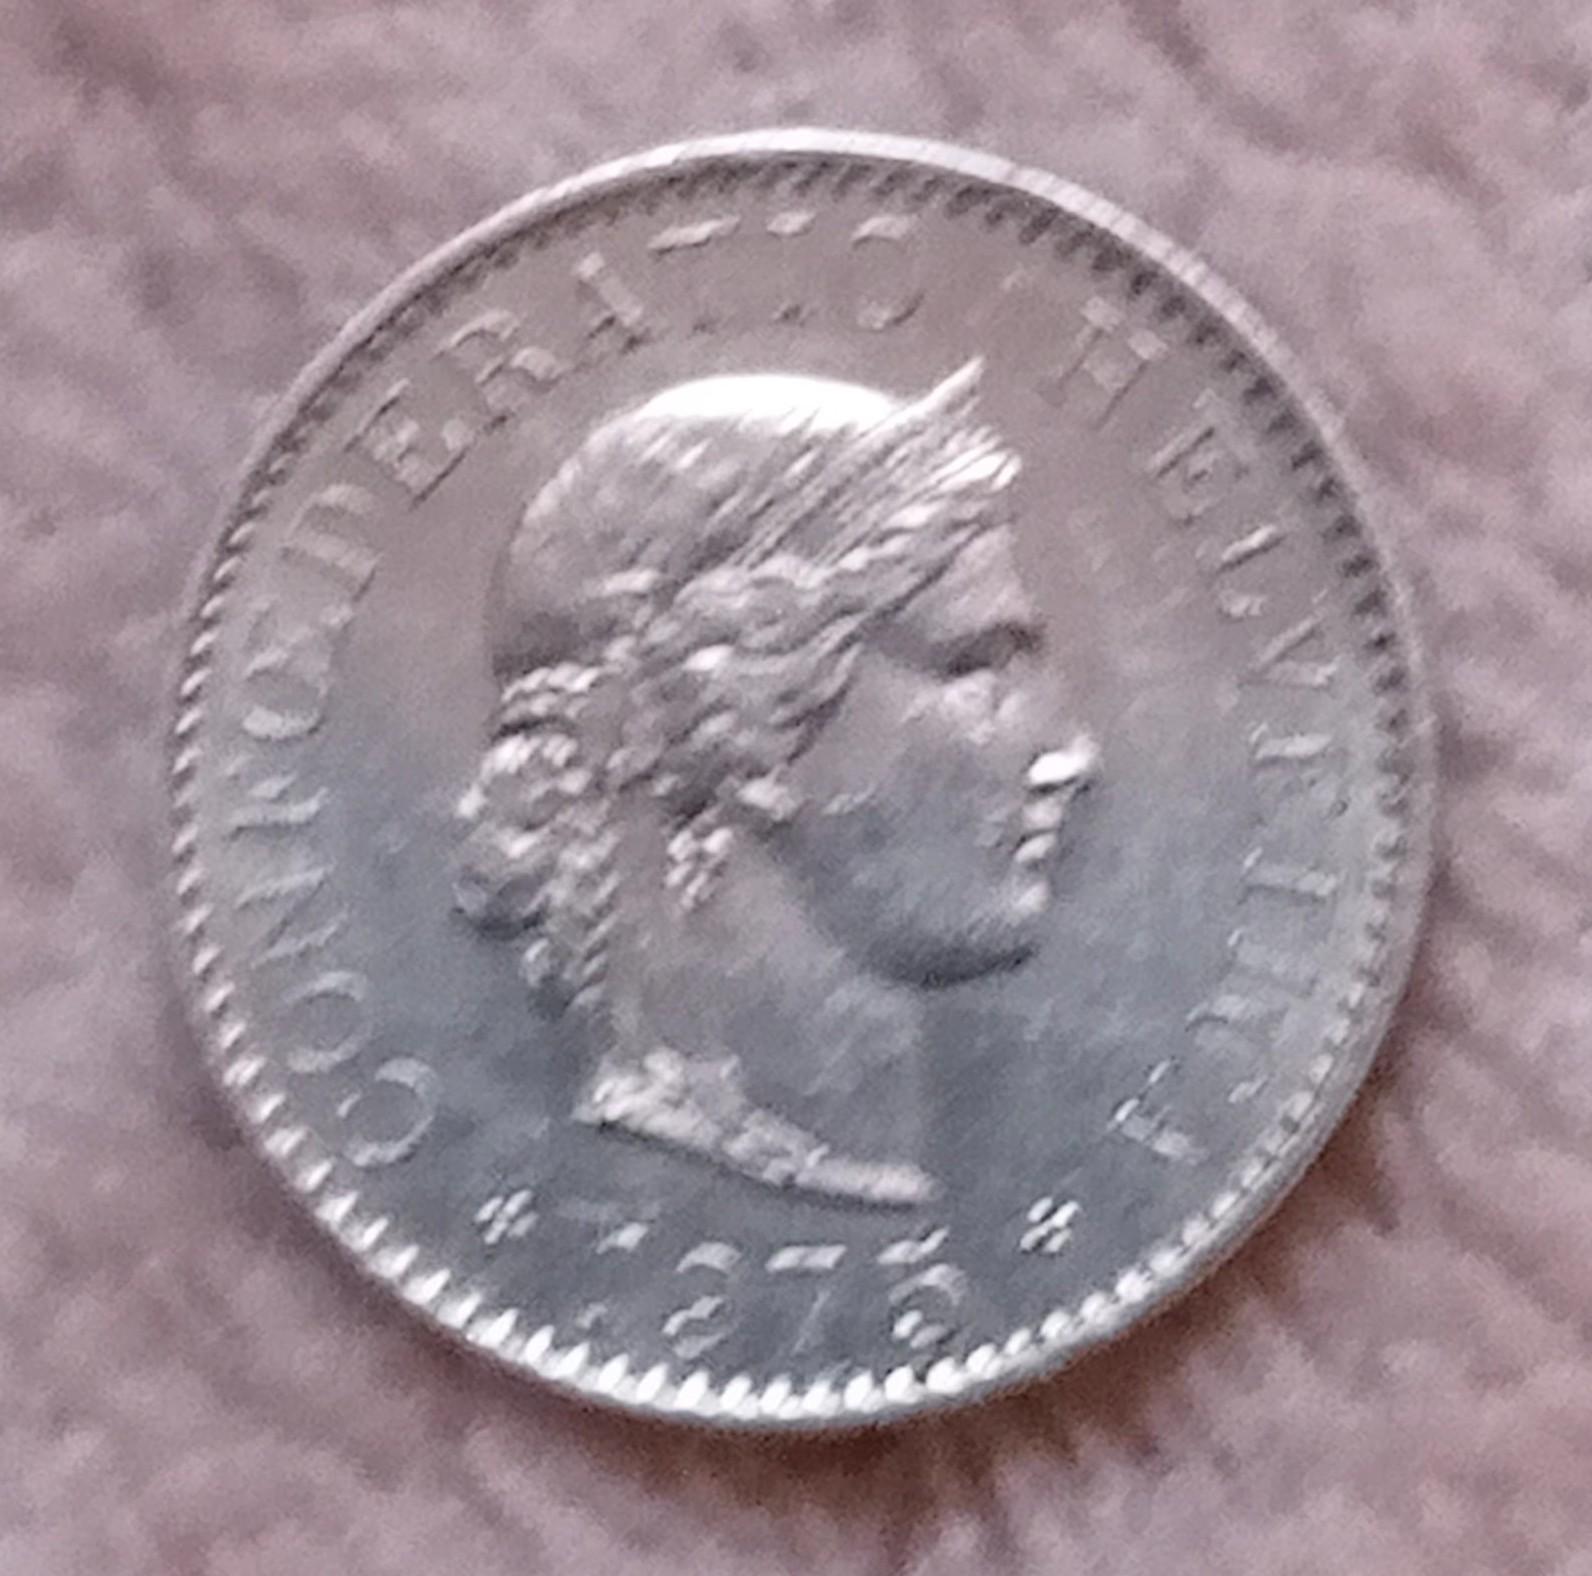 troc de troc reserver. deux pièces de 5 centimes suisses 1907 image 1